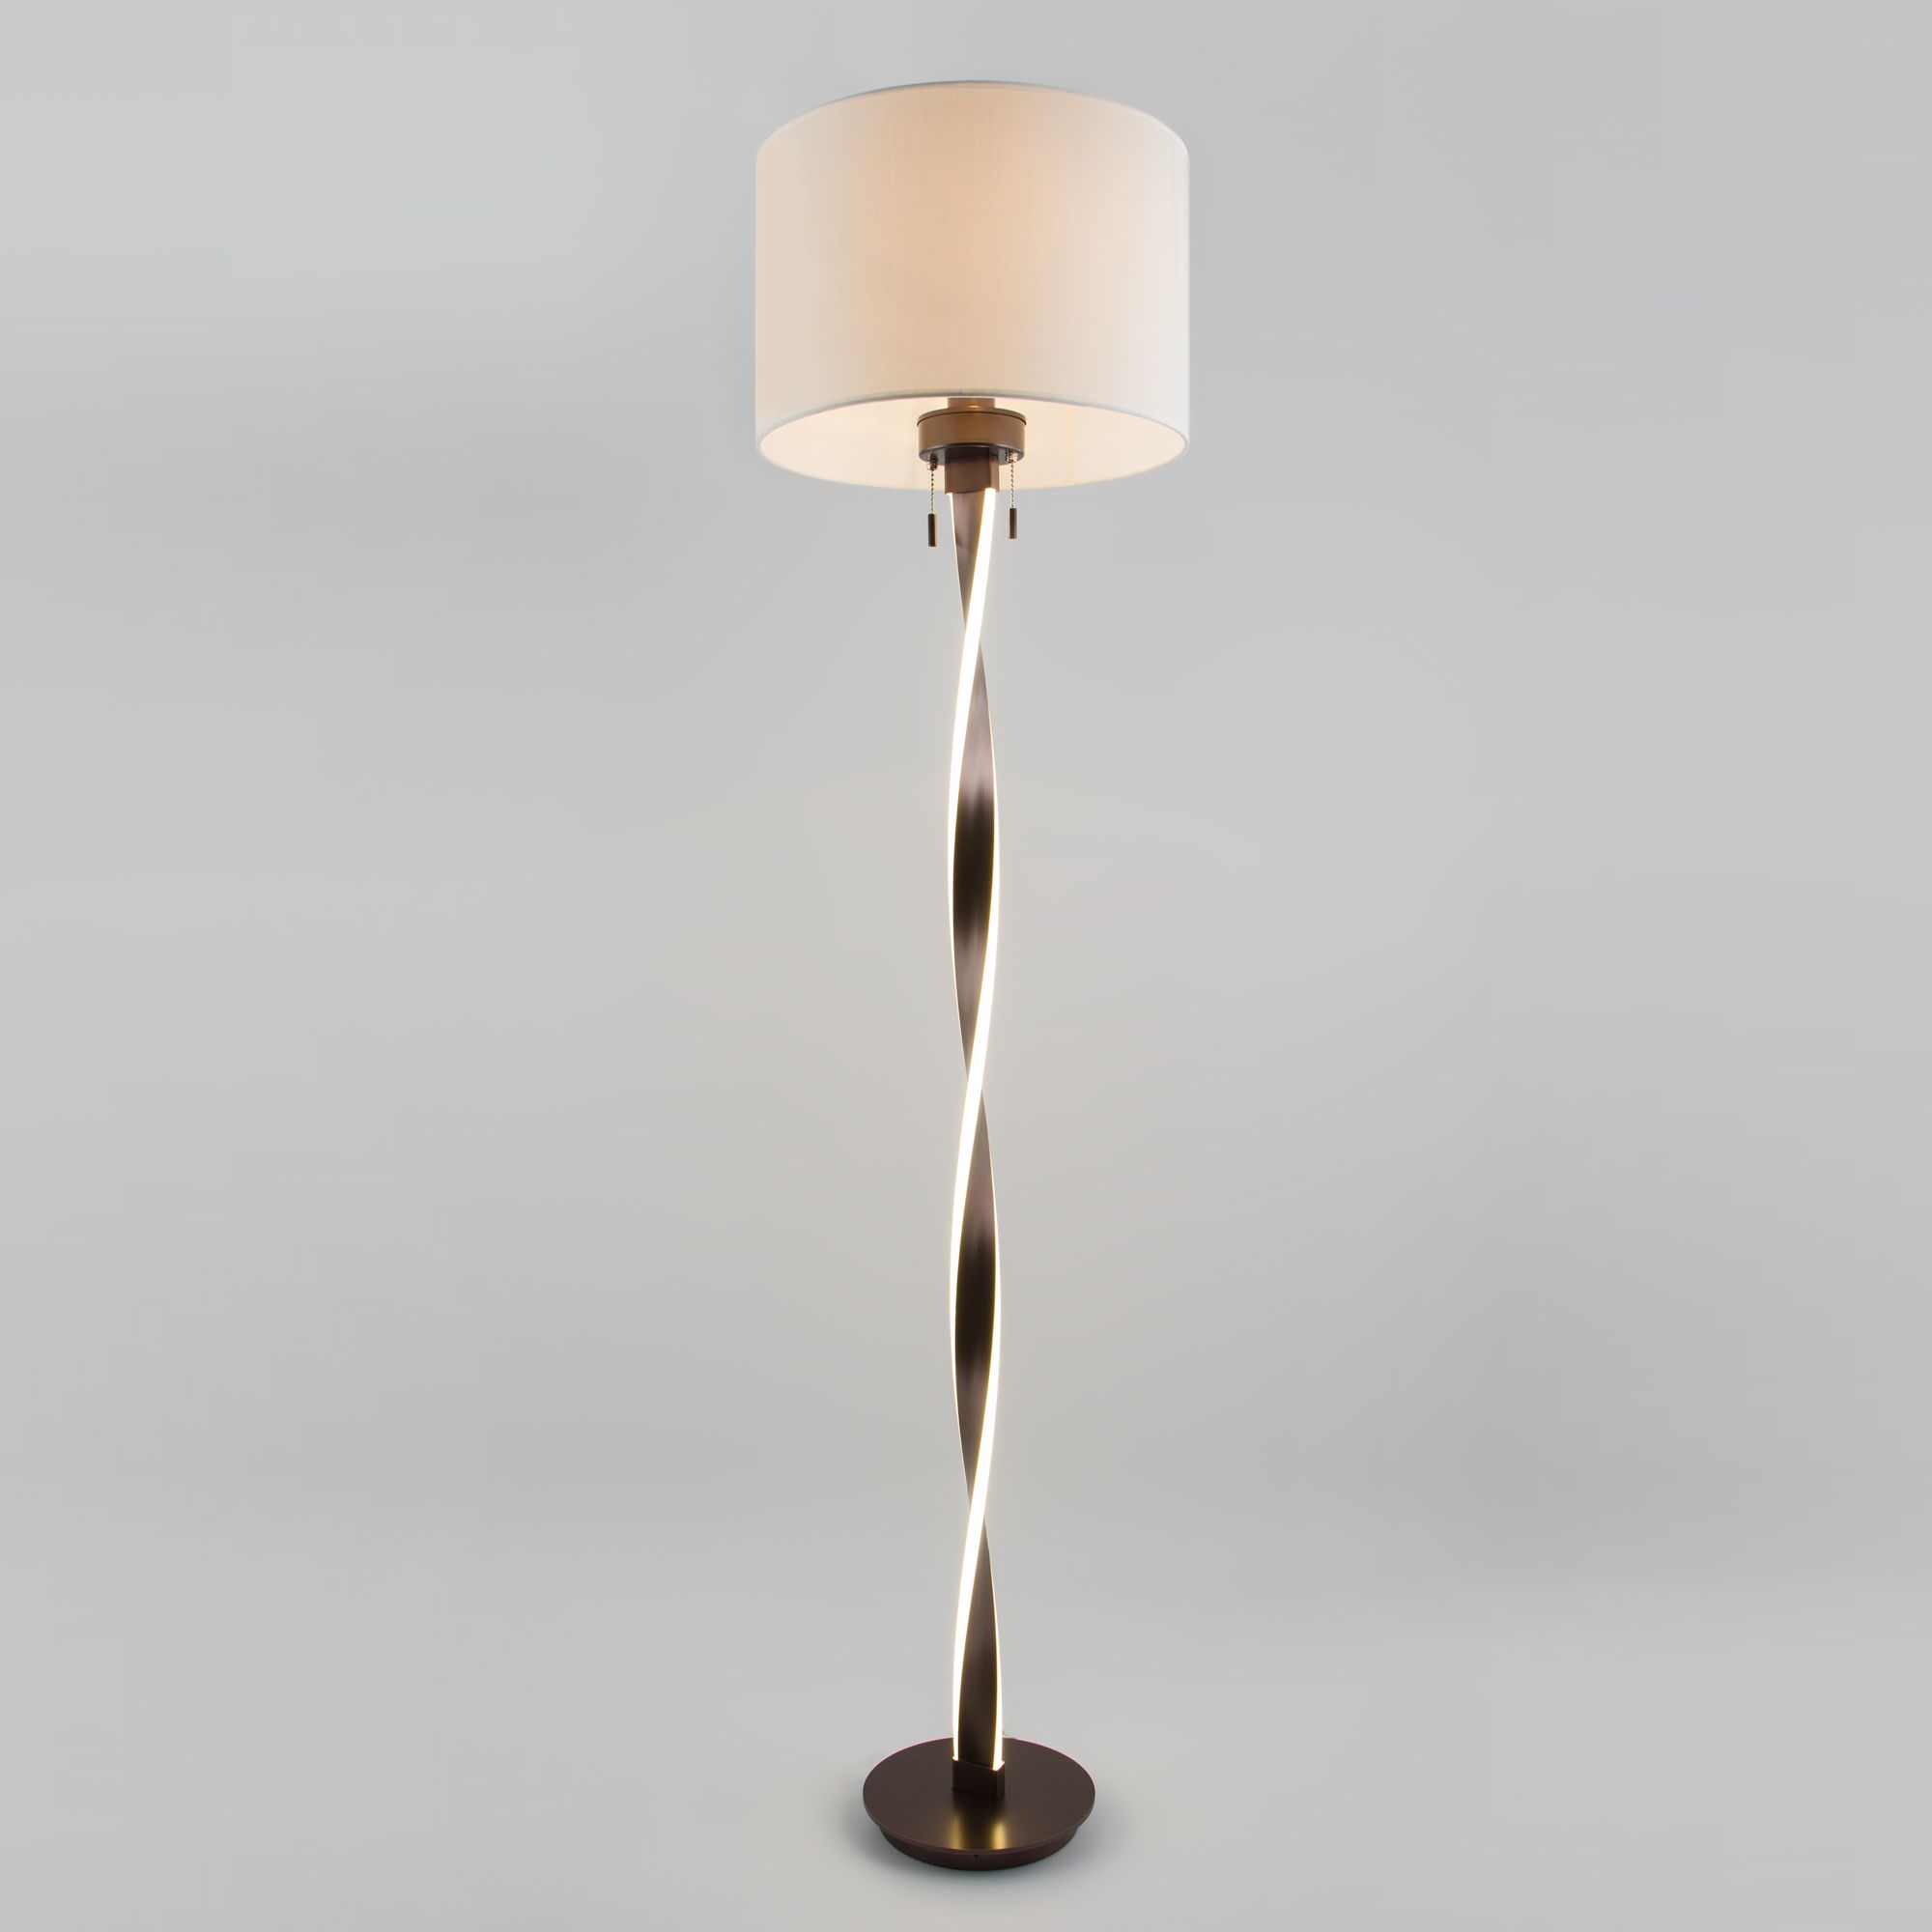 Напольный светодиодный светильник с тканевым абажуром Bogate's Titan 990 белый / коричневый. Фото 1